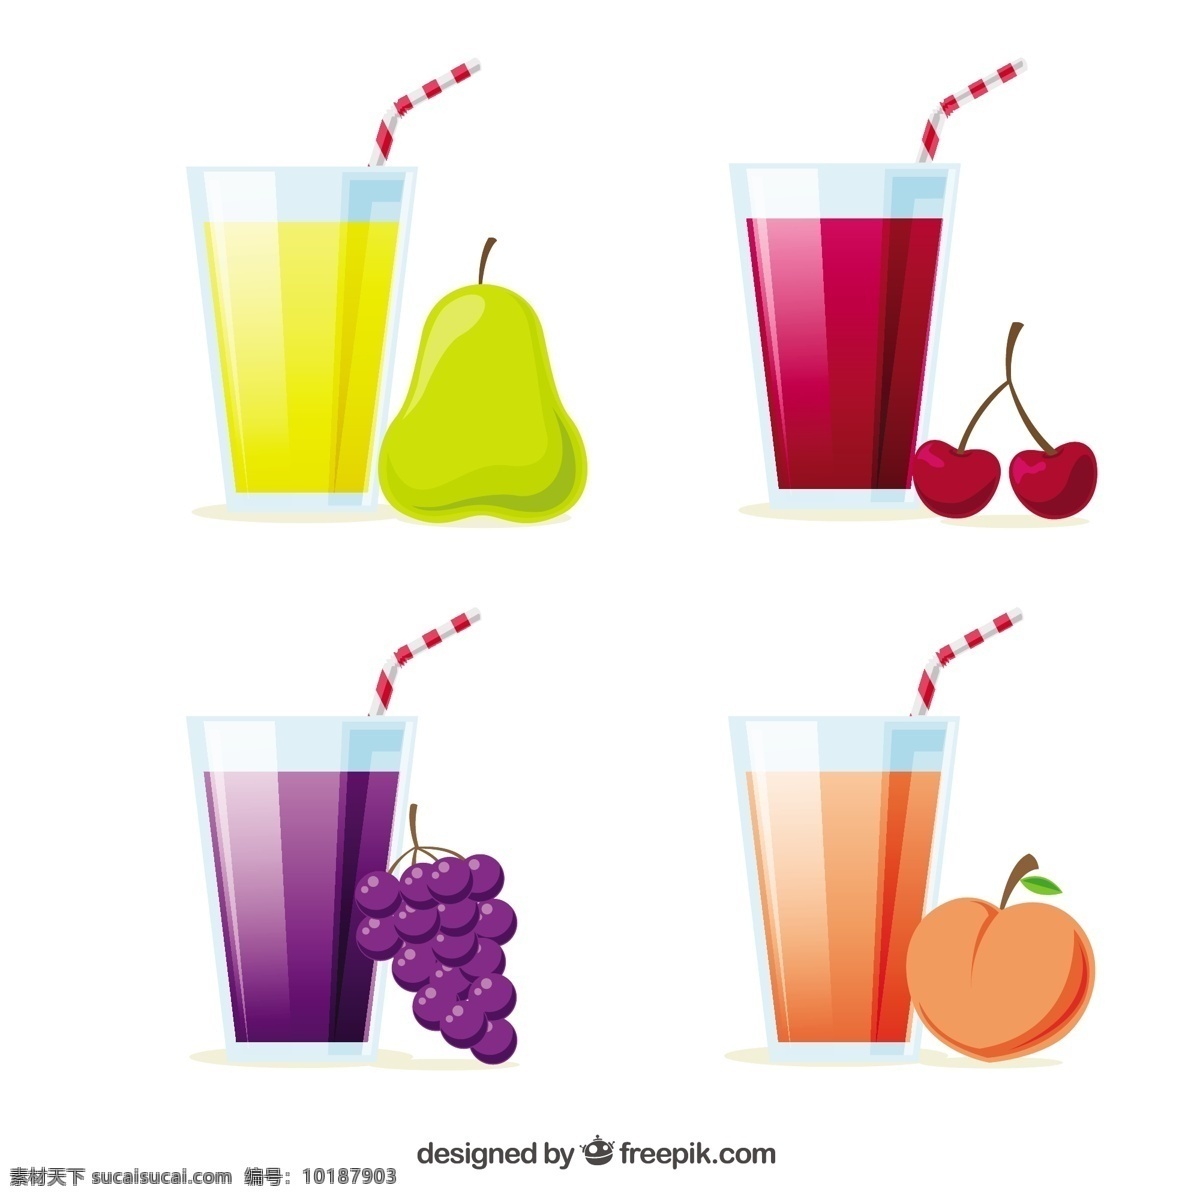 四 种 玻璃杯 装 不同 种类 果汁 四种 玻璃杯装的 不同种类果汁